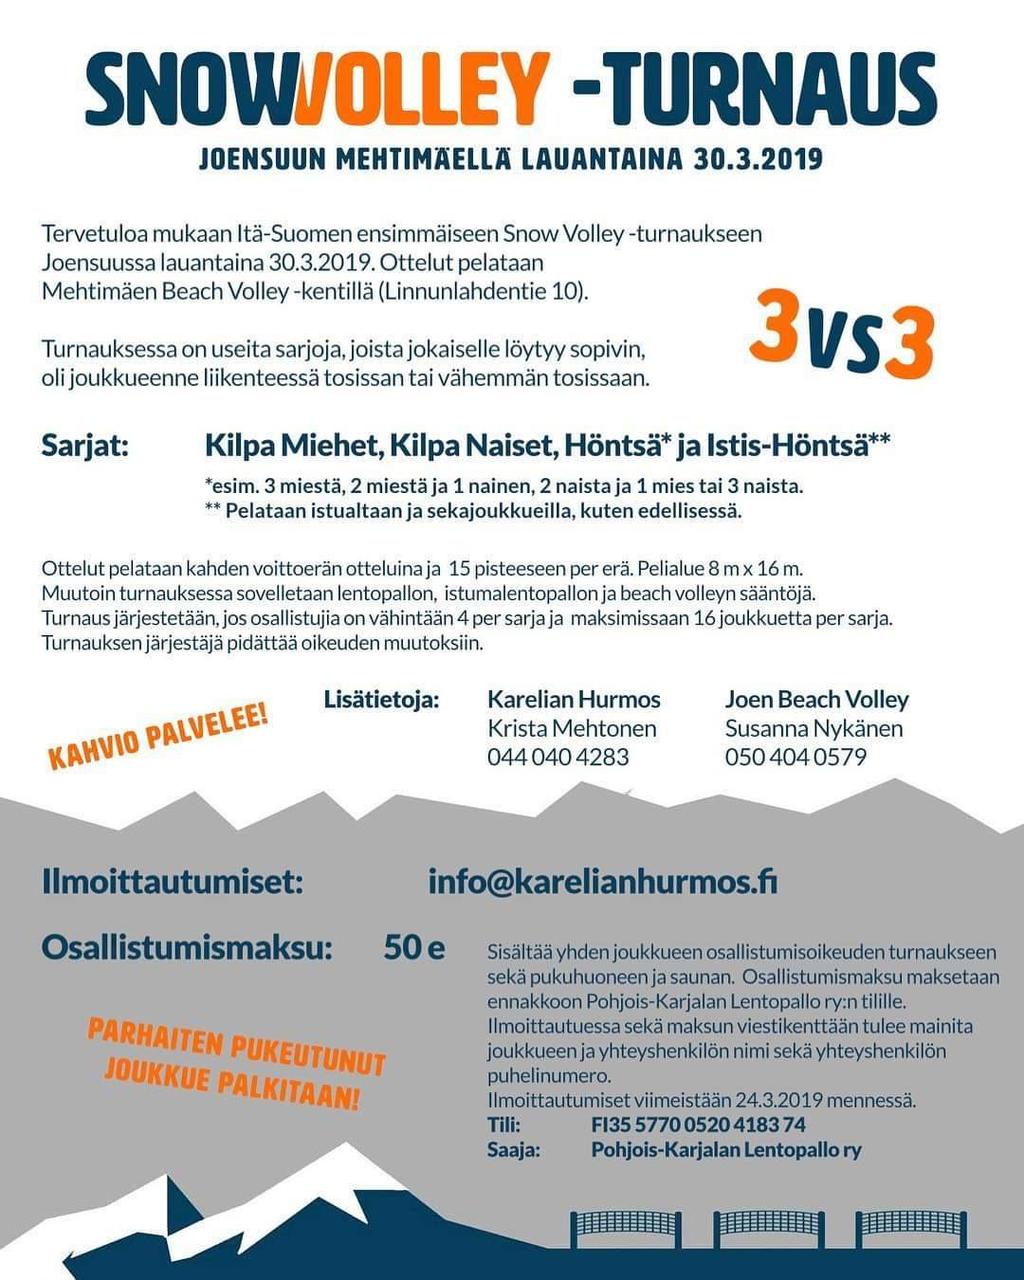 HURMOSTA JA HÖNTSÄÄ - SNOWVOLLEY JOENSUUSSA 22.2.2019 22:30 (Mia Tarvainen/Info) Nyt sitä sitten saa - ististä lumisohjossa. Höntsää Joensuussa 30.3.2019. Ei ehkä eturauhasvammaisille.